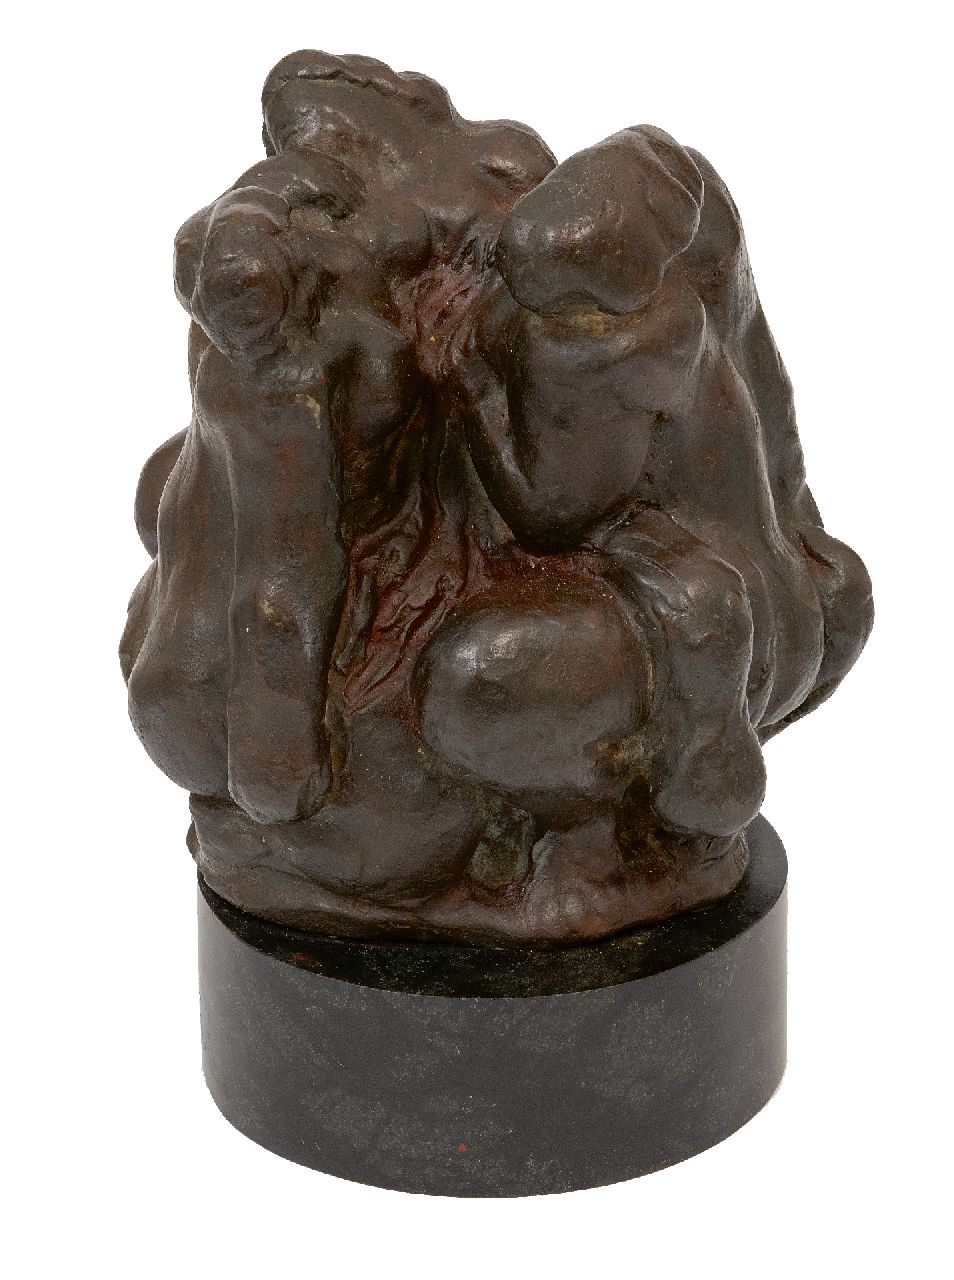 Jonk N.  | Nicolaas 'Nic' Jonk | Skulpturen und Objekte zum Verkauf angeboten | Die drei Grazien, Bronze 19,0 x 17,0 cm, Unterzeichnet auf der basis und datiert auf der Basis '60